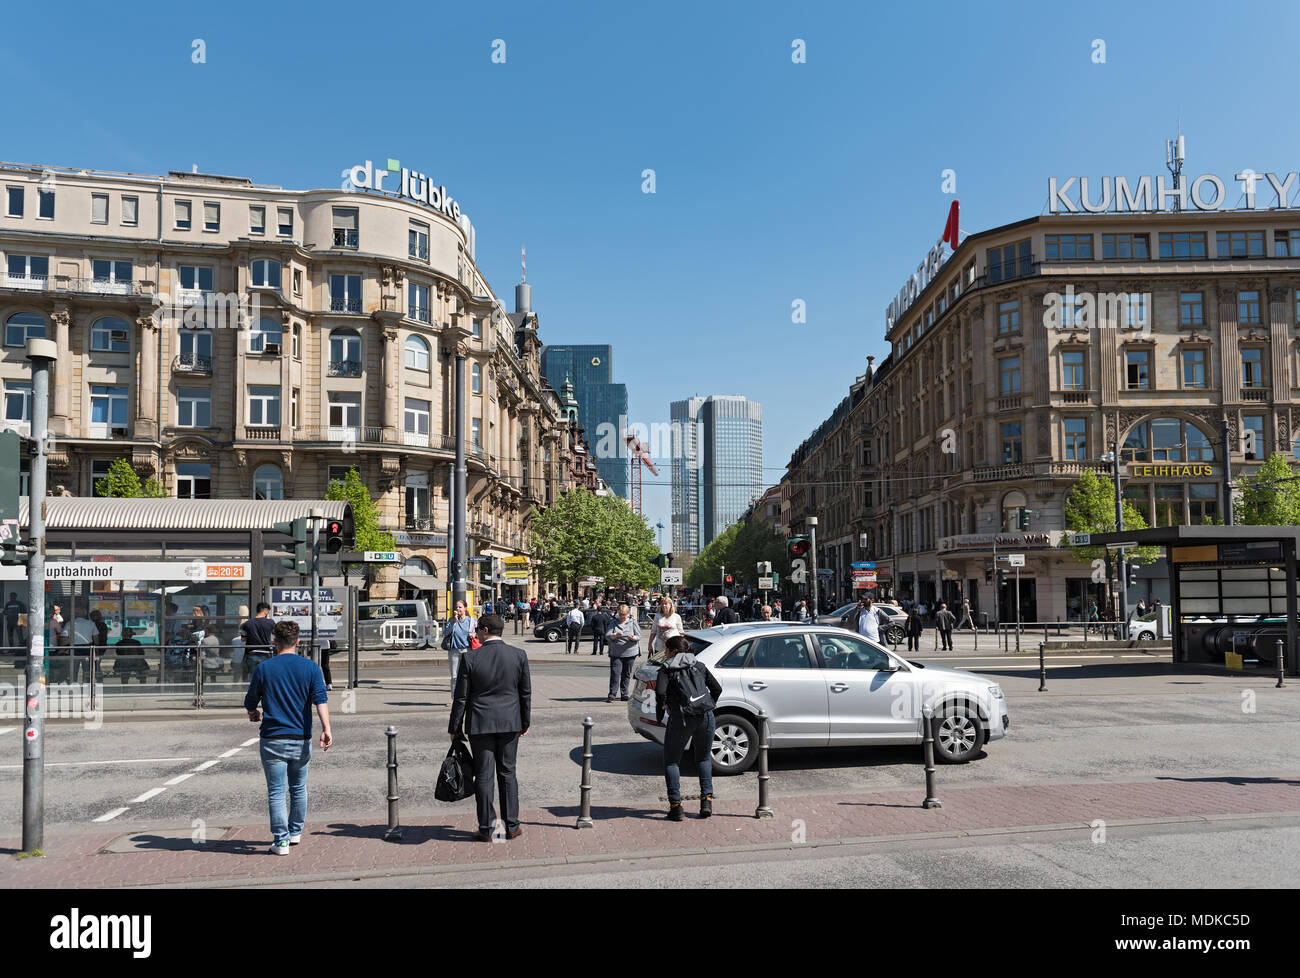 La vista de la gente en Kaiserstrasse street y la plaza en frente de la estación principal de Frankfurt am Main, Alemania Foto de stock